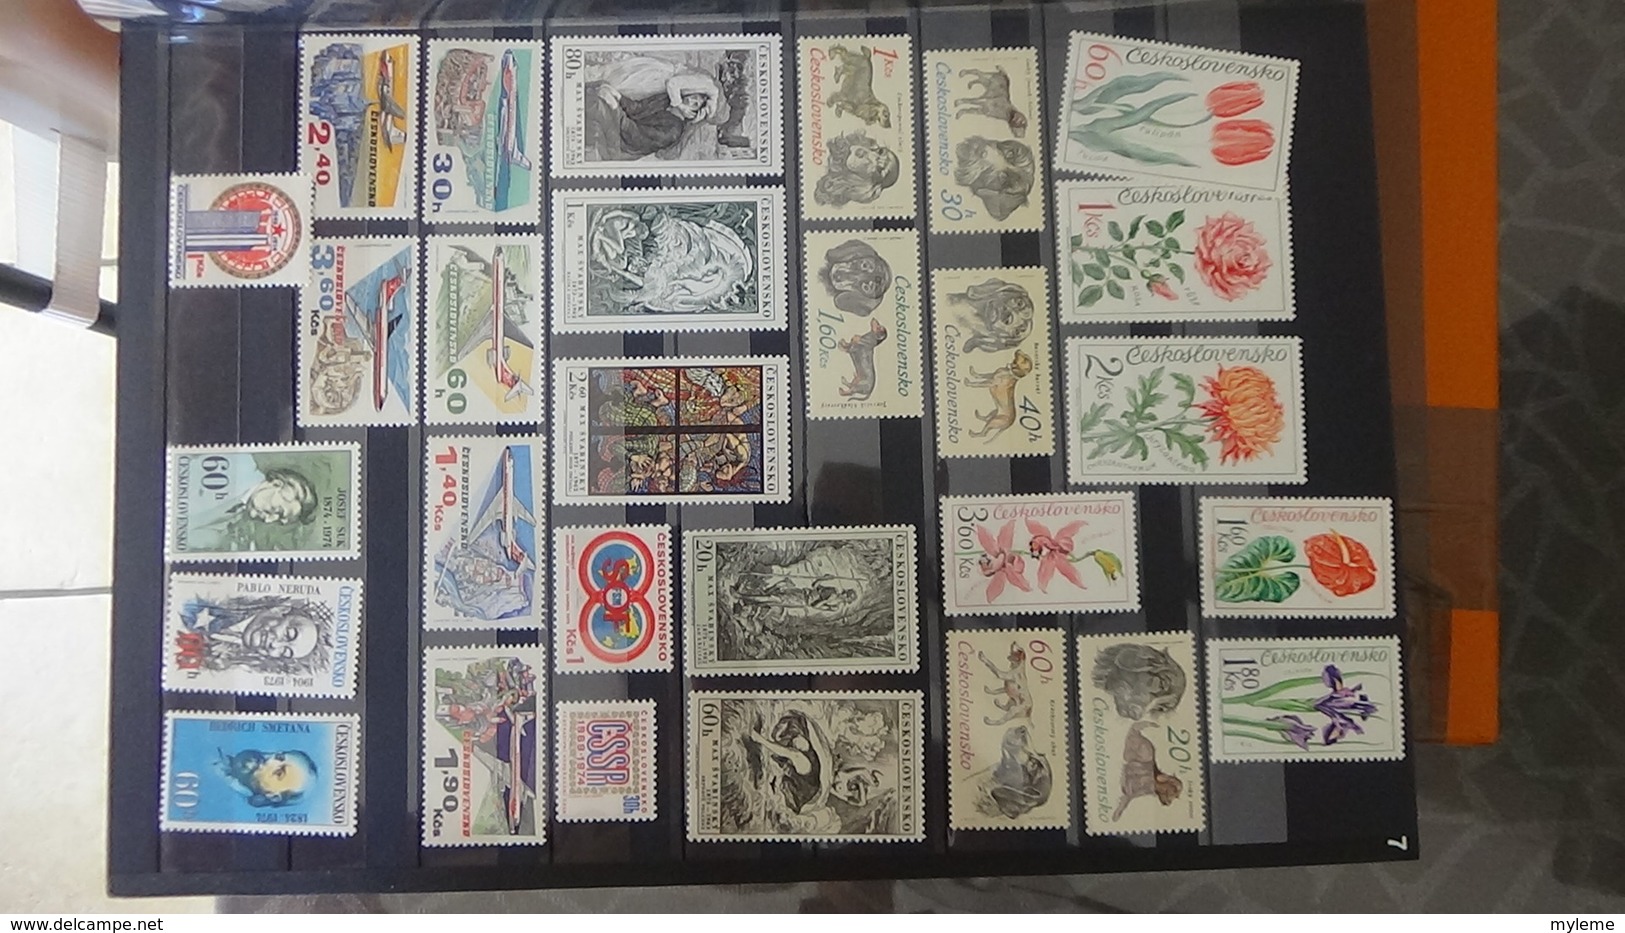 Collection de TCHECOSLOVAQUIE  en timbres ** et blocs oblitérés. A saisir !!!